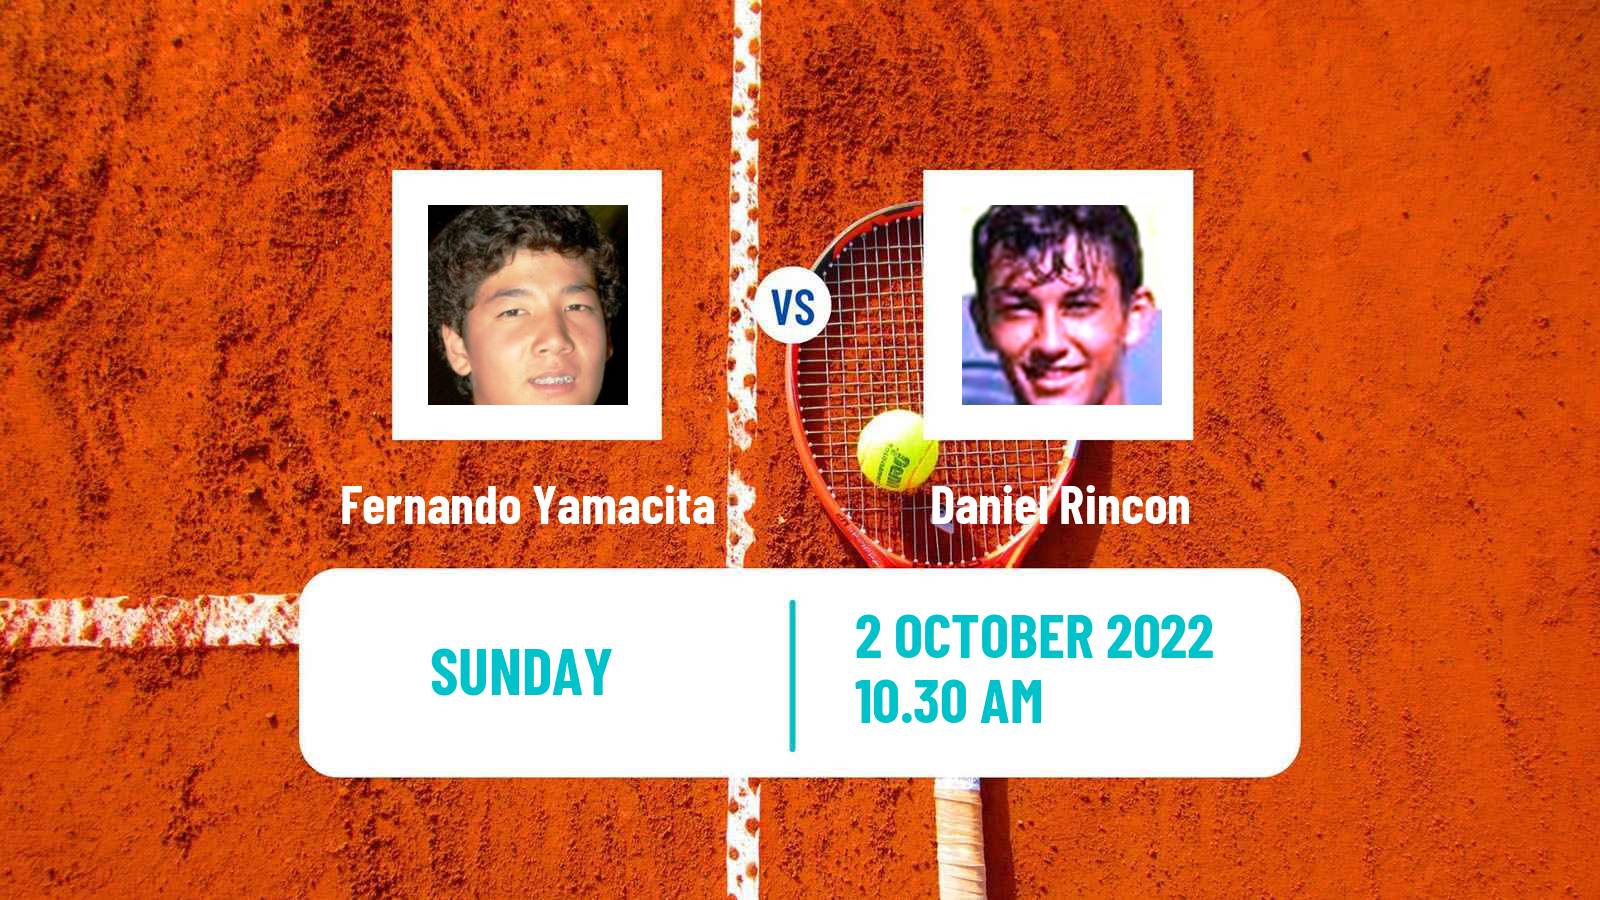 Tennis ATP Challenger Fernando Yamacita - Daniel Rincon